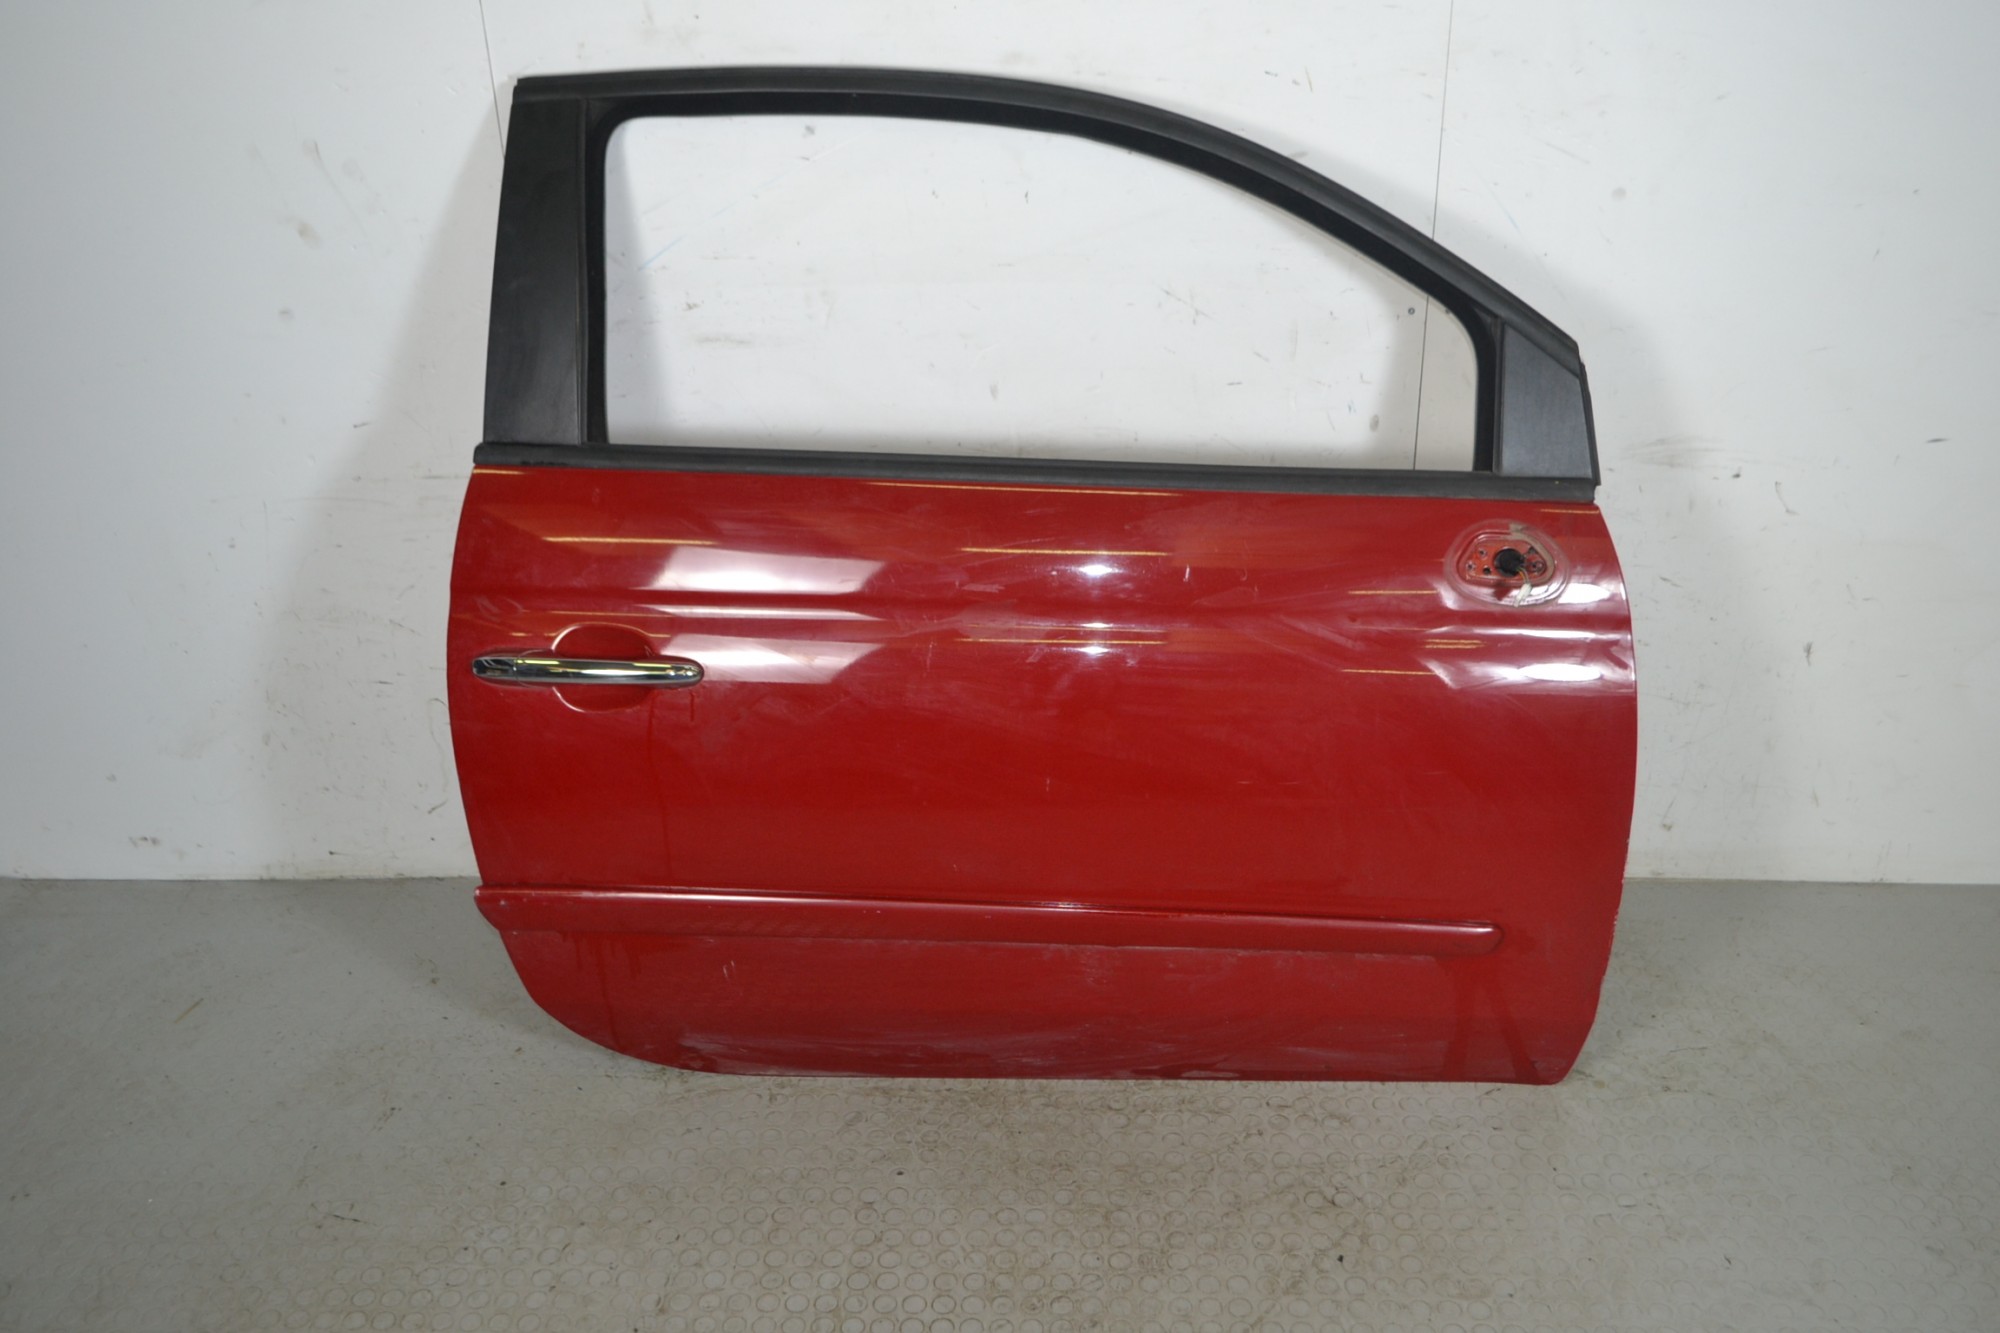 Portiera sportello destro DX Fiat 500 Dal 2007 in poi Colore rosso 111/A  1660657718278